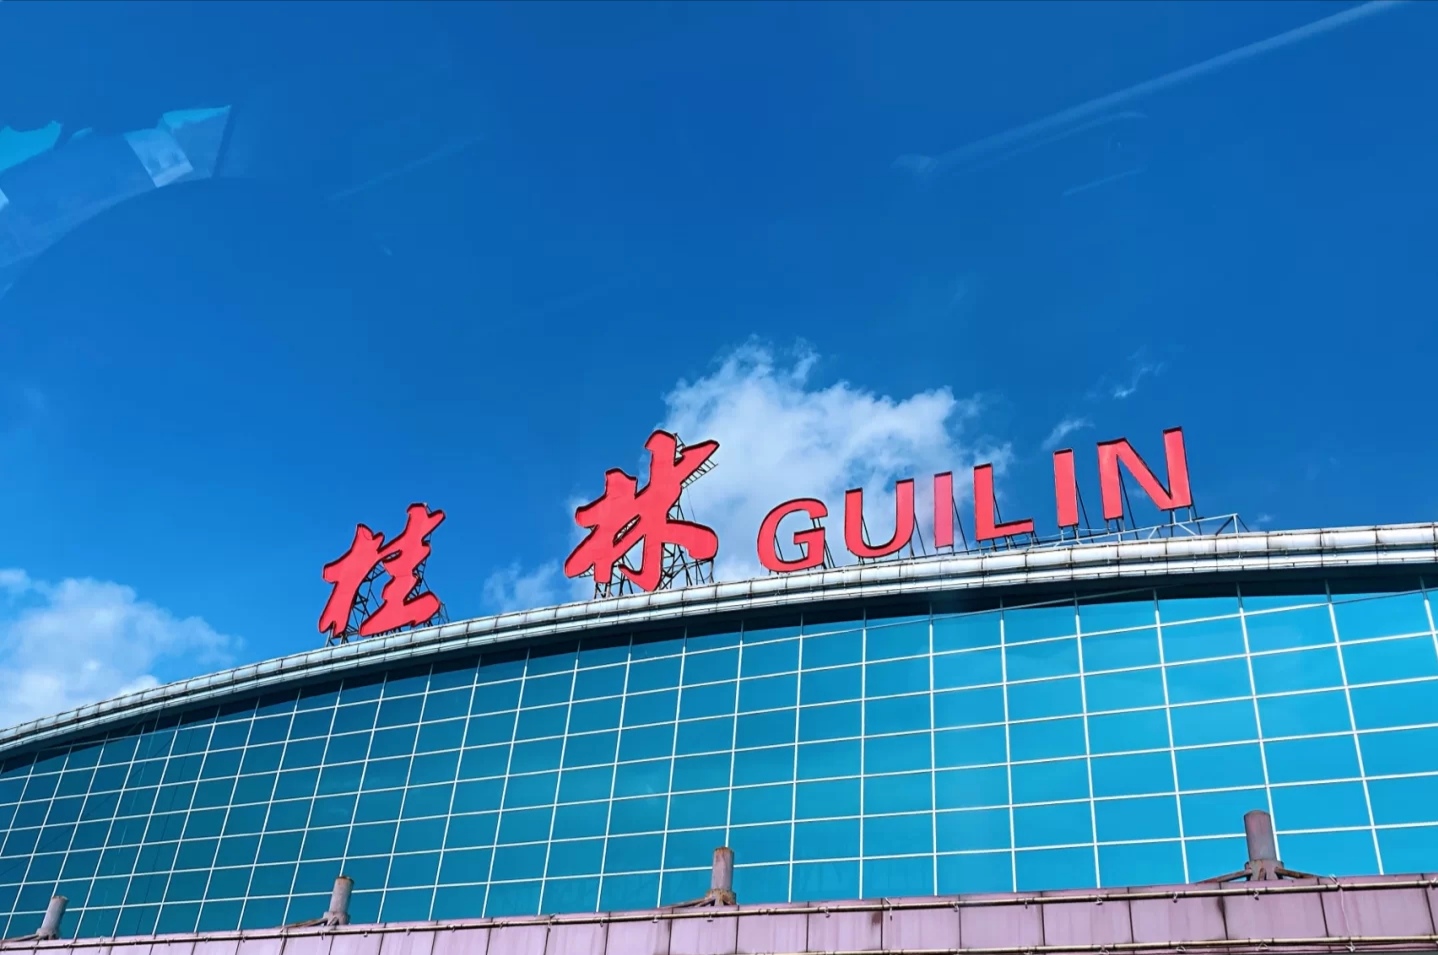 guilin airport_01.jpg